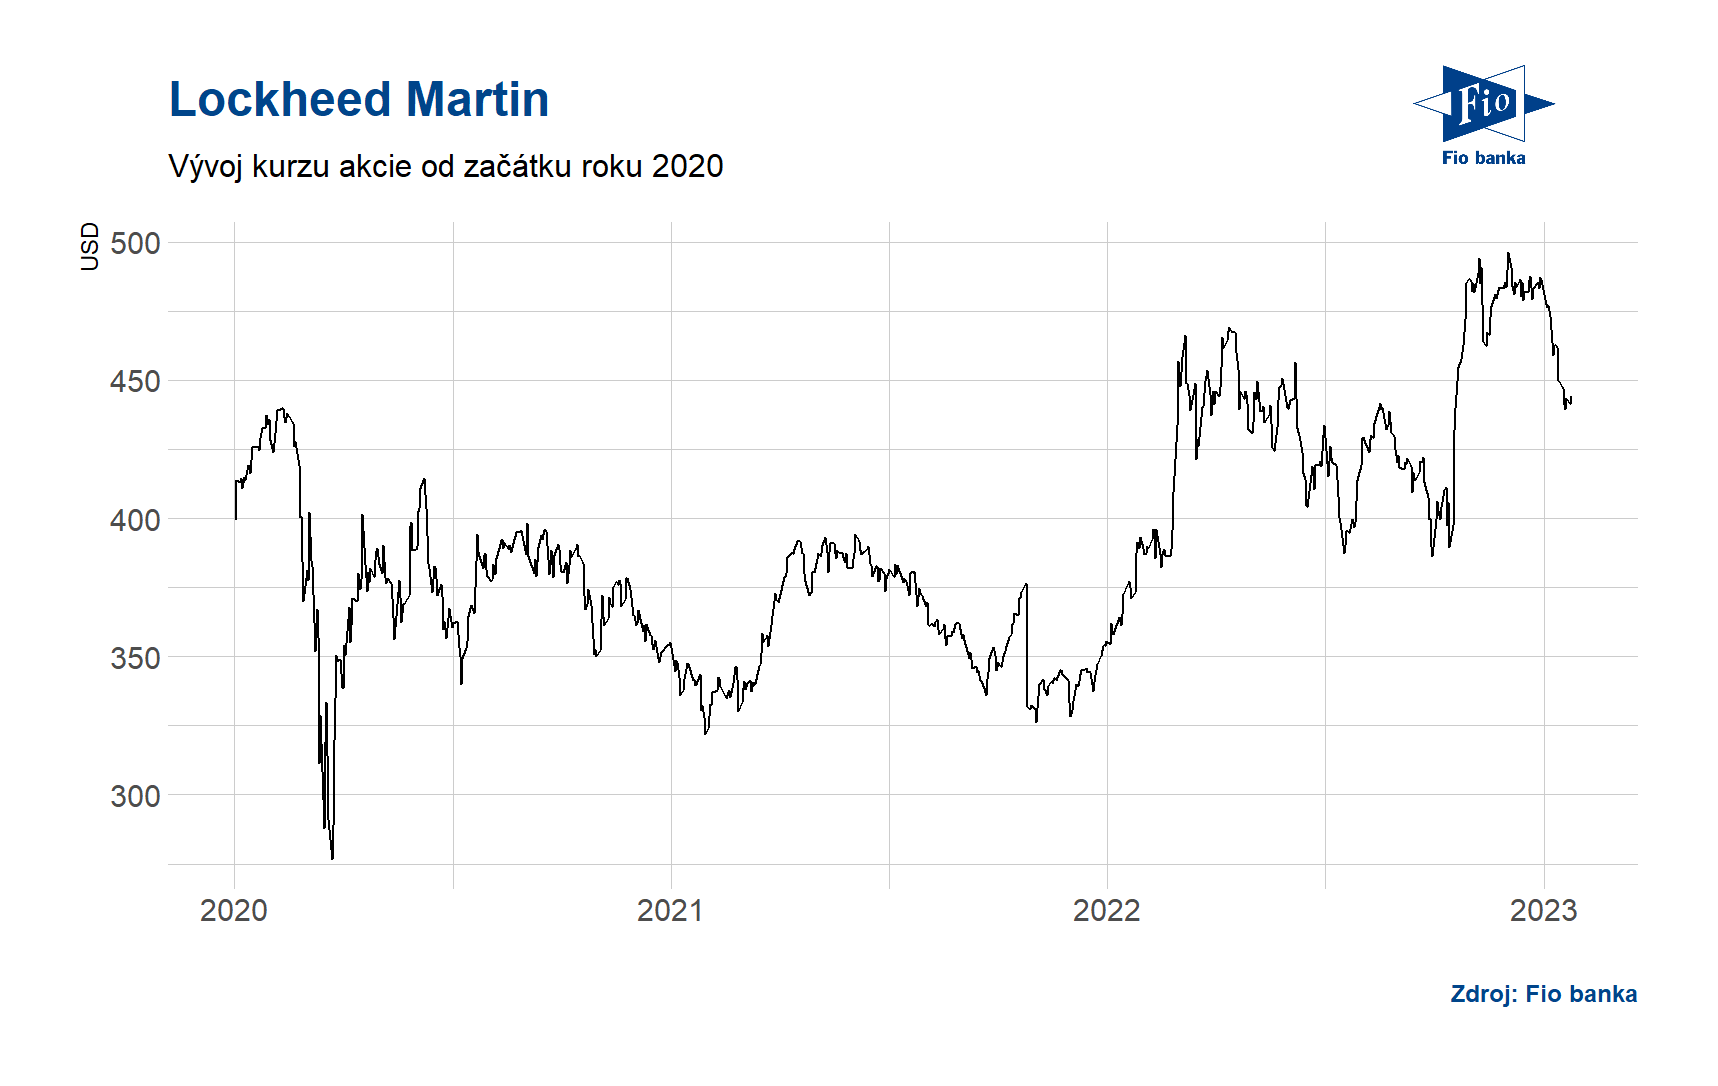 Vývoj akcií Lockheed Martin